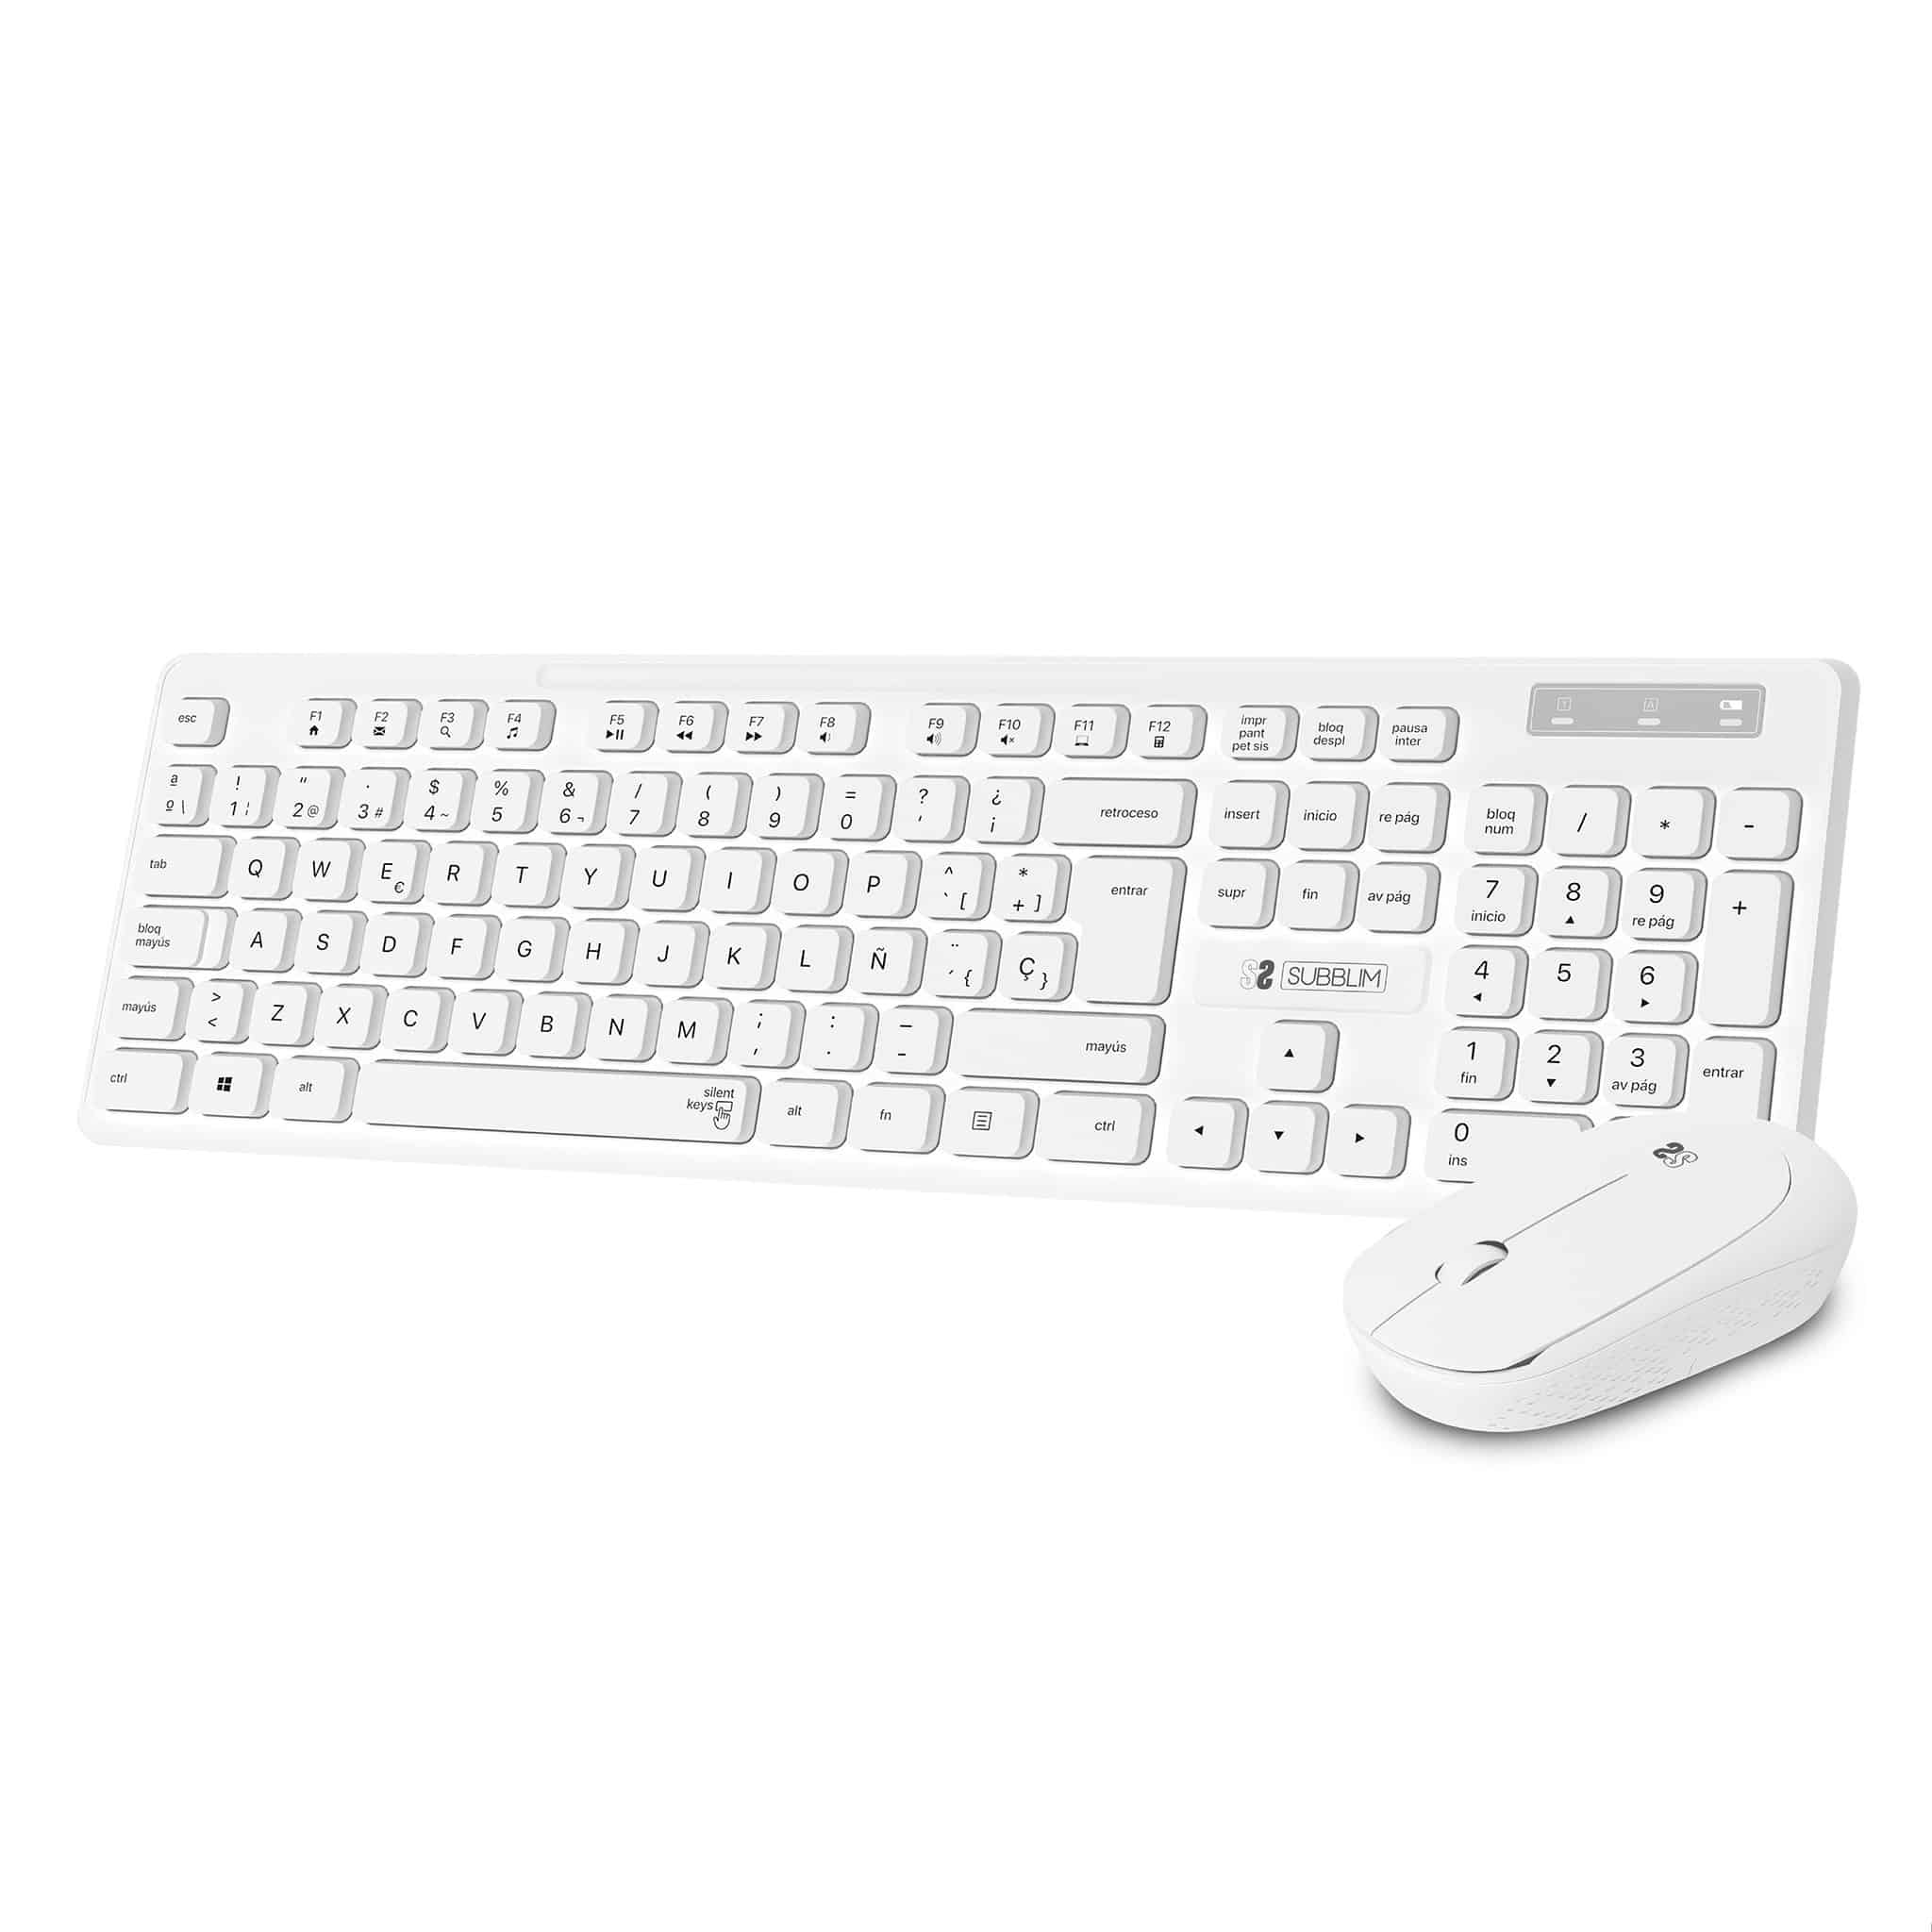 combinación de ratón y teclado inalámbricos en color blanco para oficina y empresas